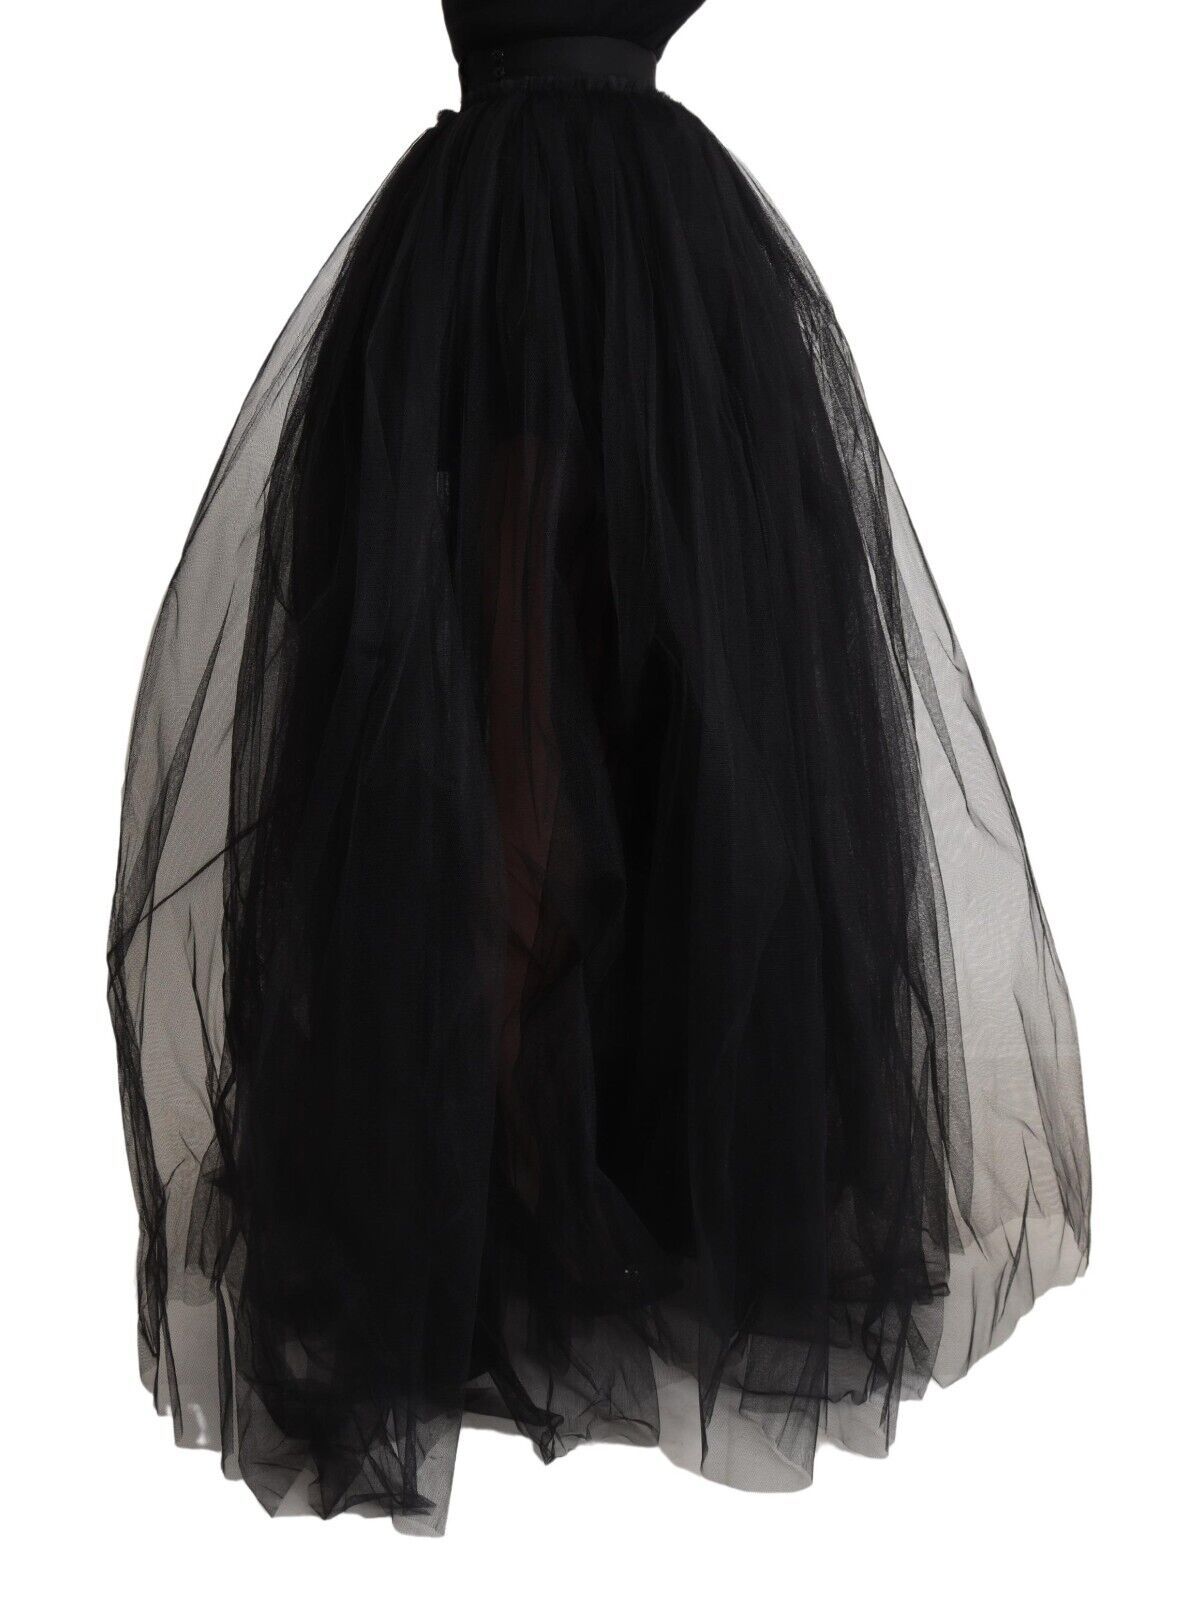 Dolce & gabbana black tulle a-line floor-length skirt